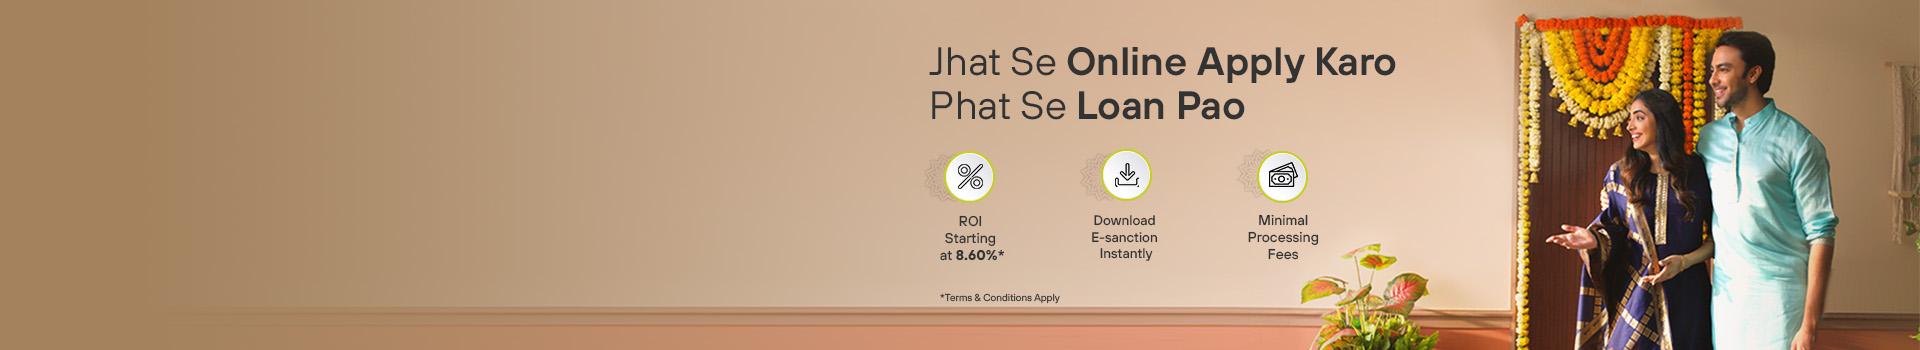 Holi Home Loan offers